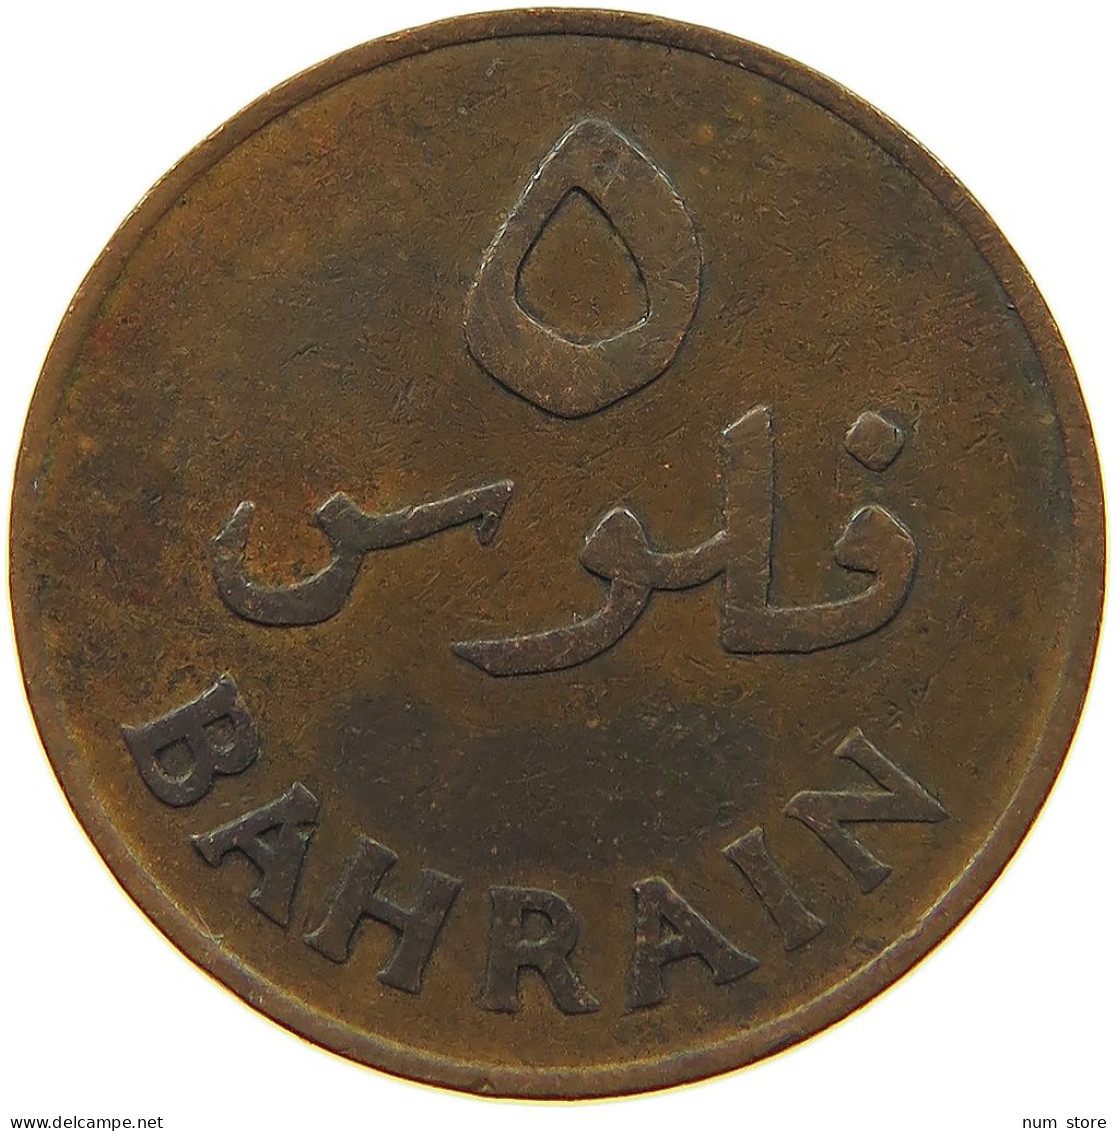 BAHRAIN 5 FILS 1965  #a050 0447 - Bahrain